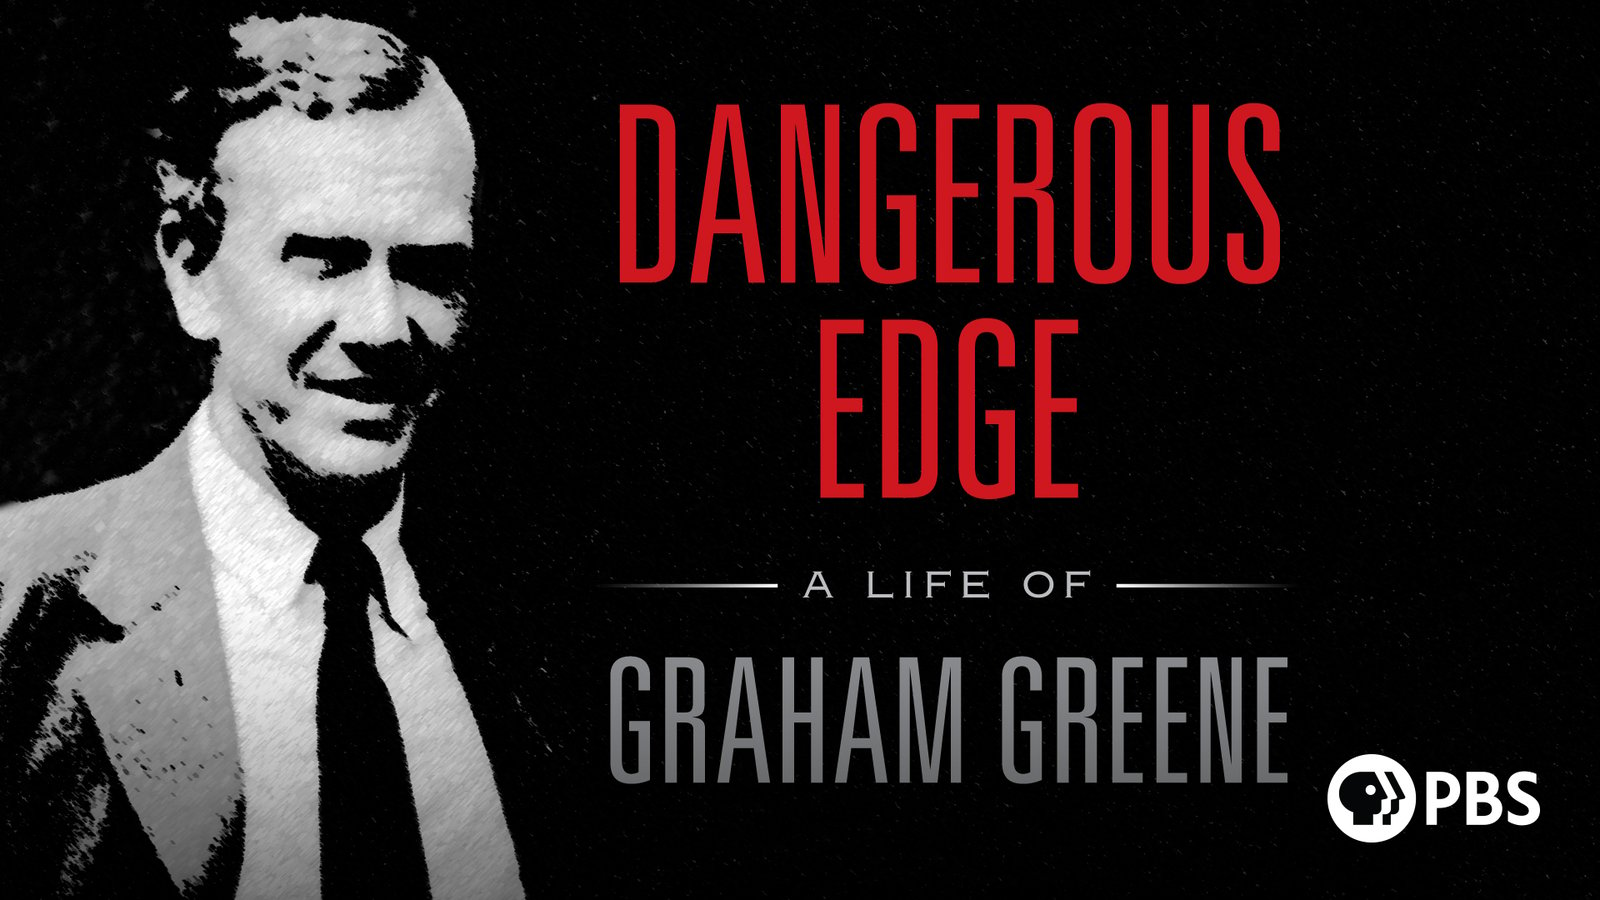 Dangerous Edge - A Life of Graham Greene